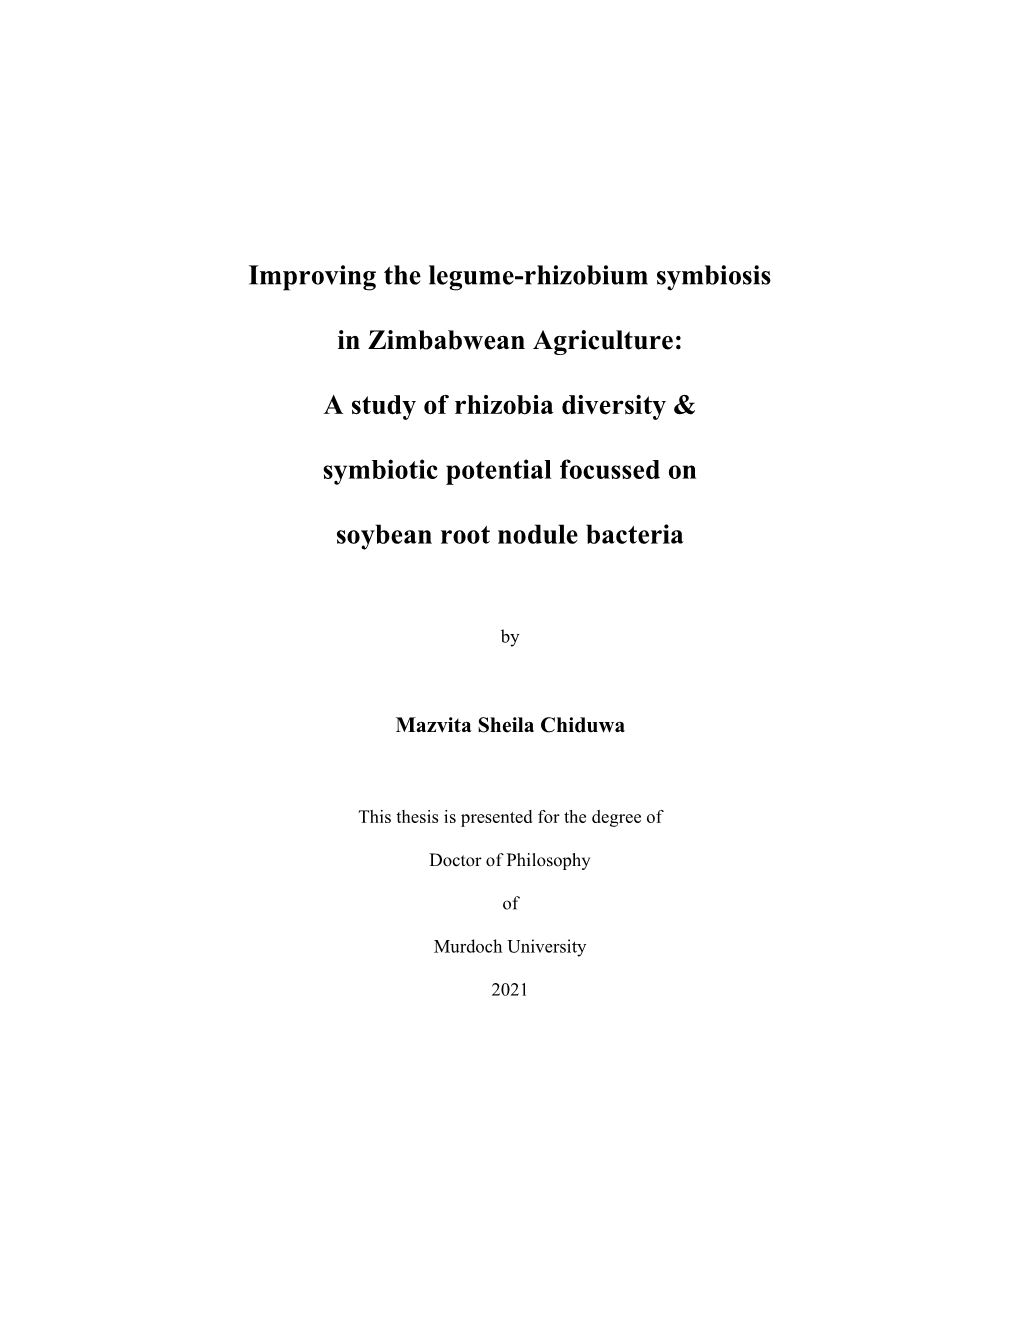 Improving the Legume-Rhizobium Symbiosis in Zimbabwean Agriculture